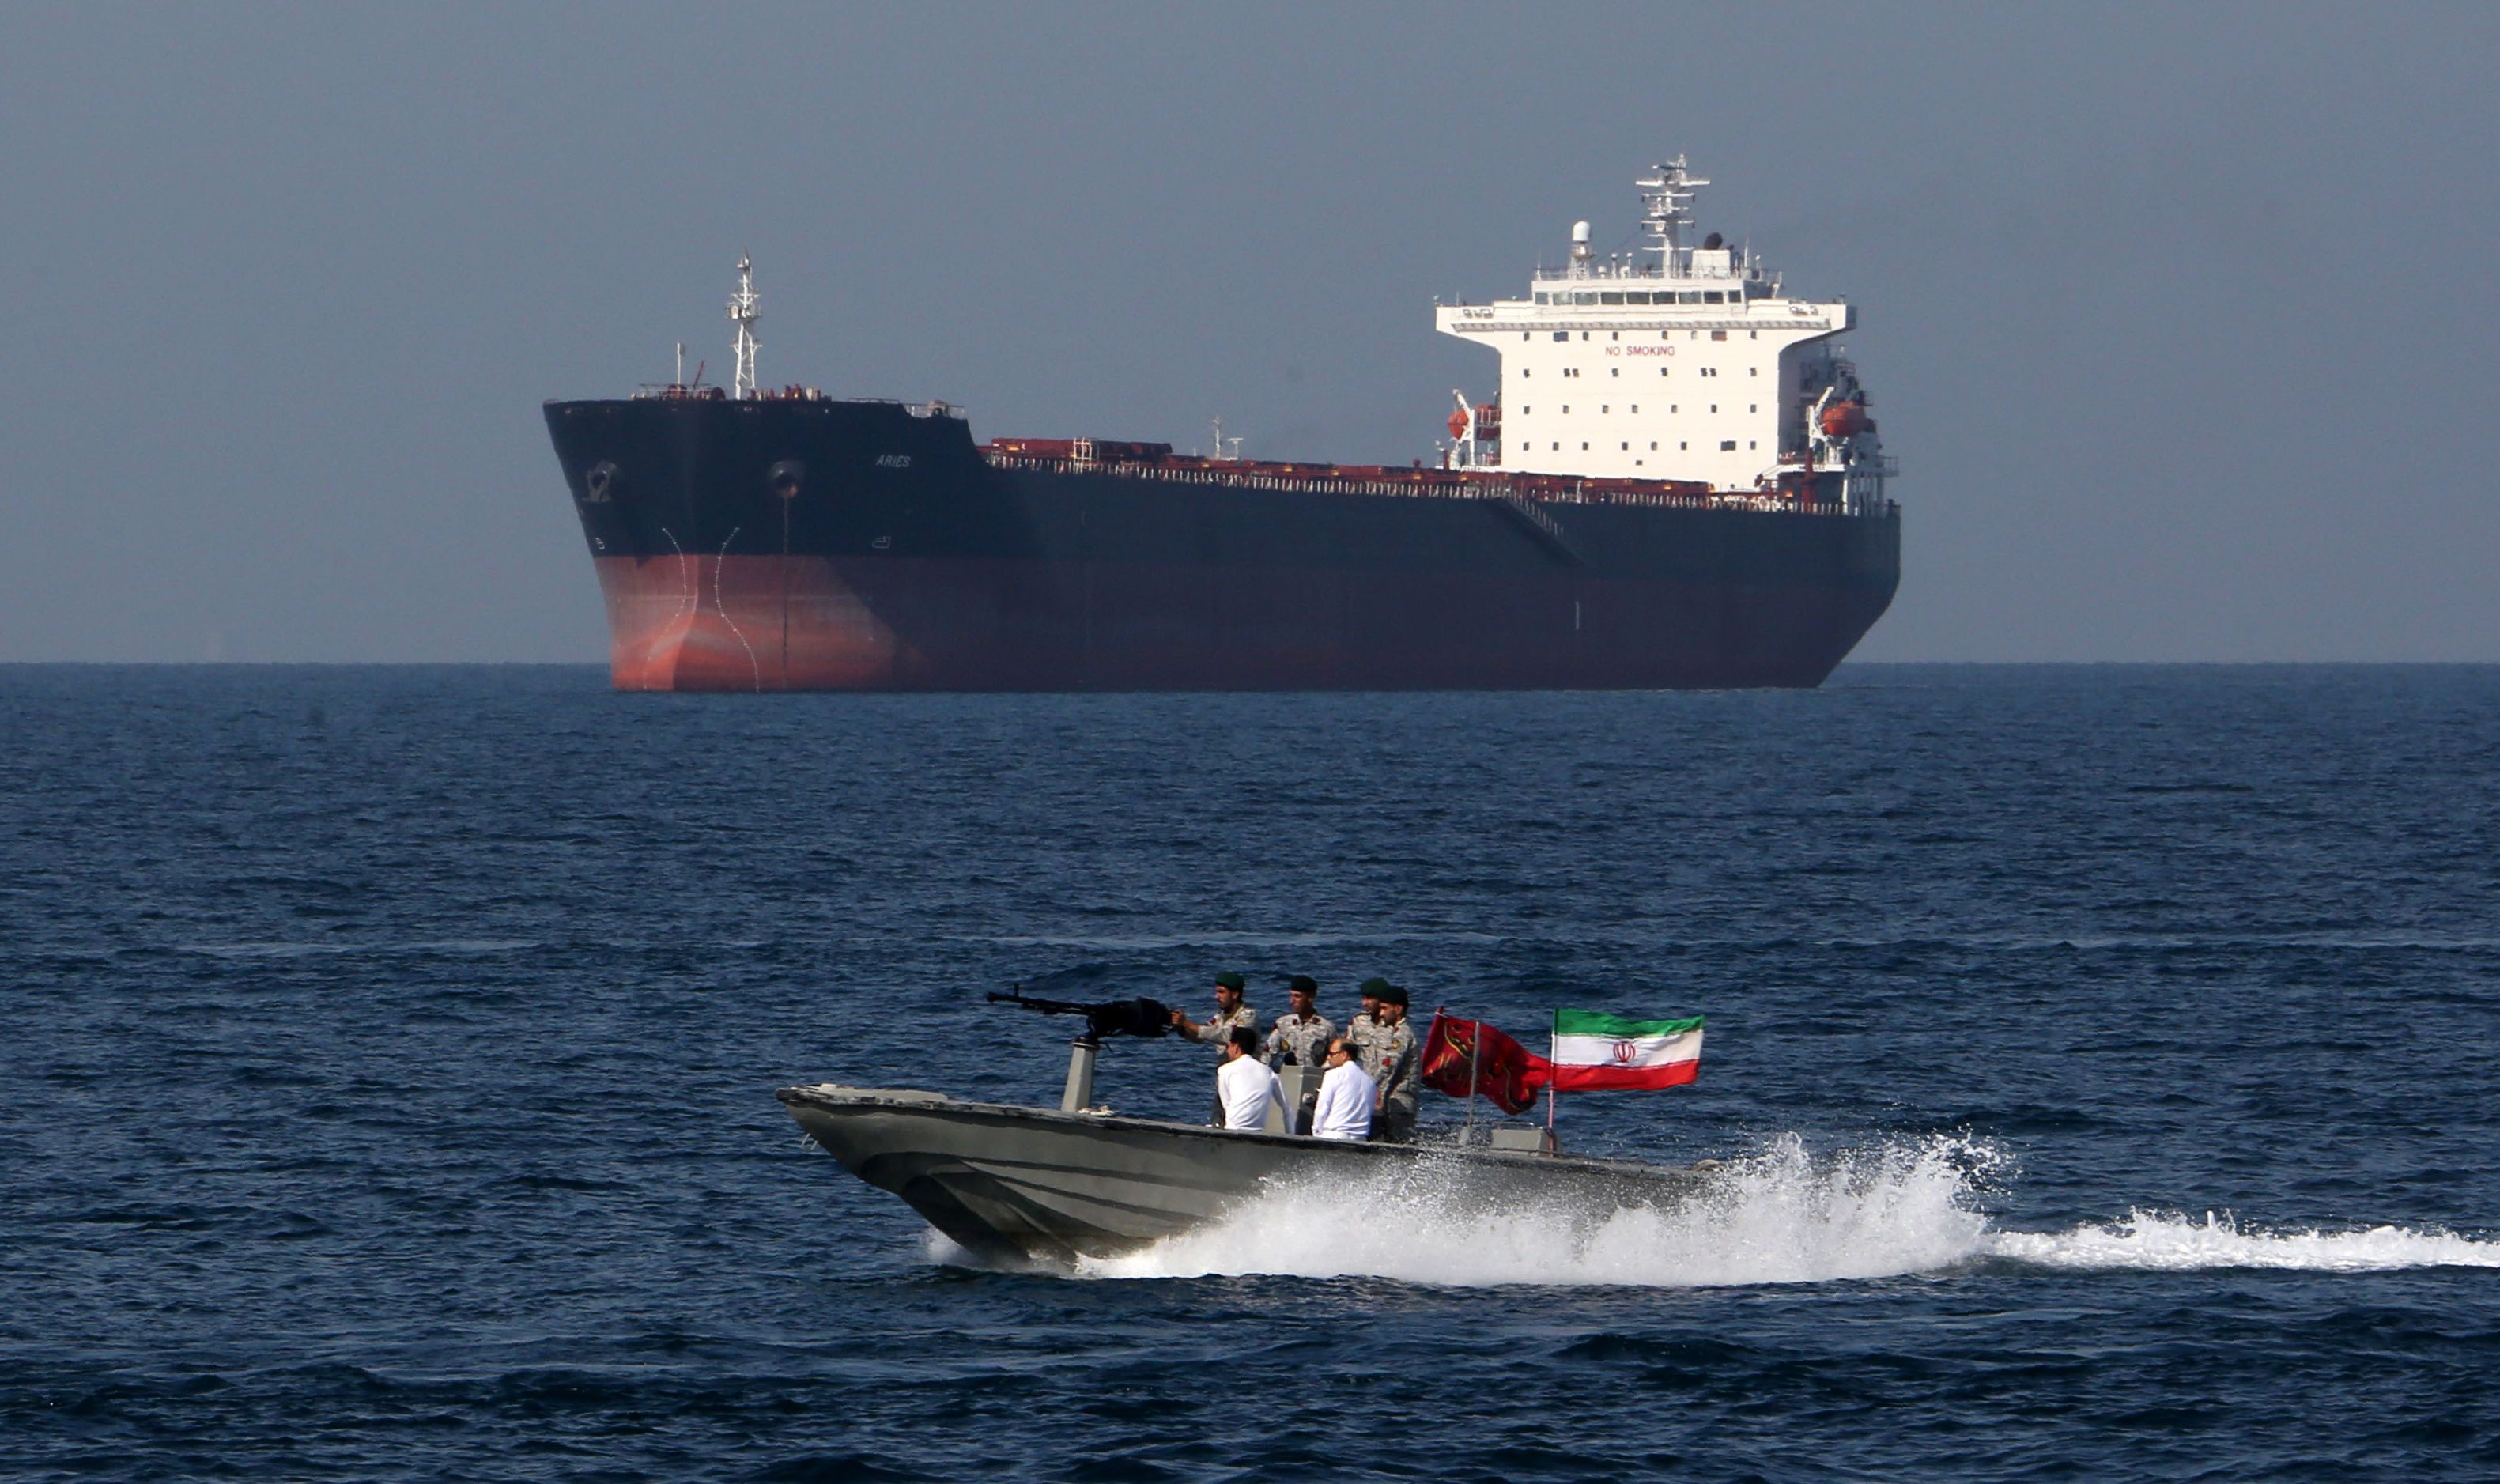 جزئیات توقیف نفتکش های انگلیسی توسط ایران